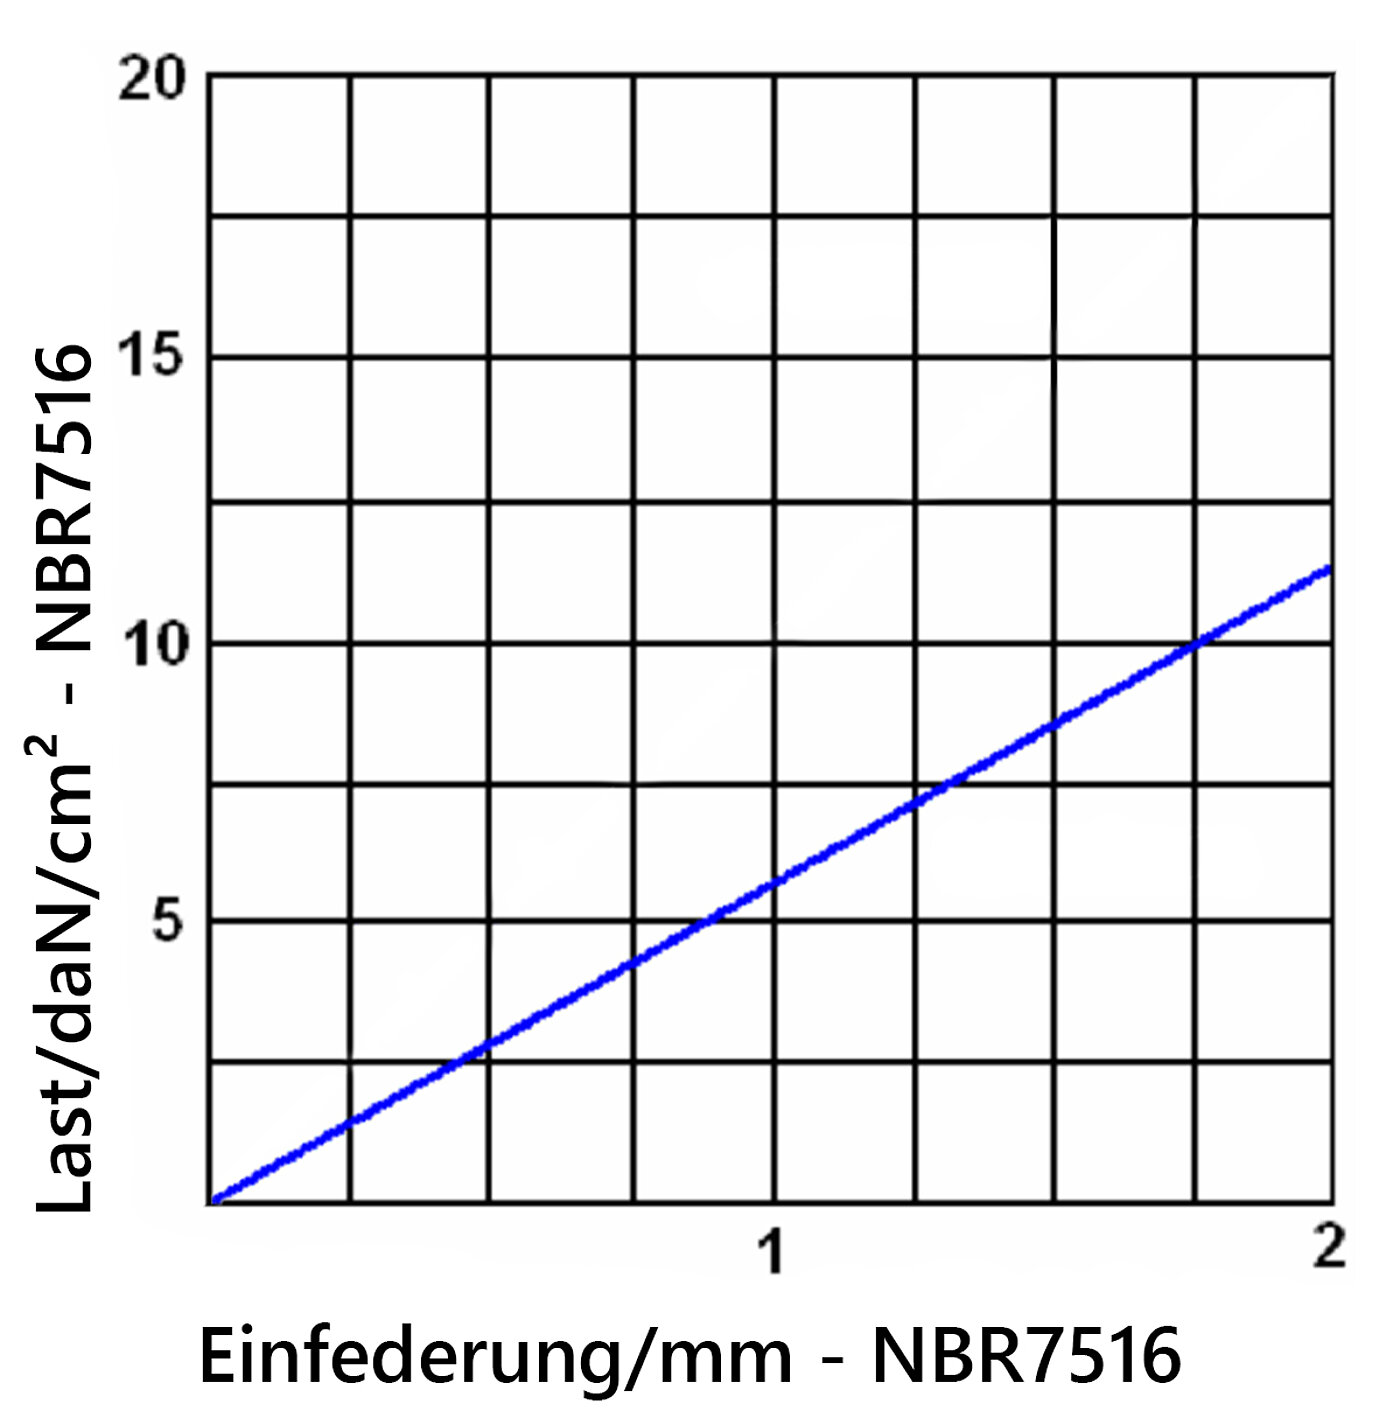 Diagramm der Einfederung der Elastomerplatte NBR7516 unter Last